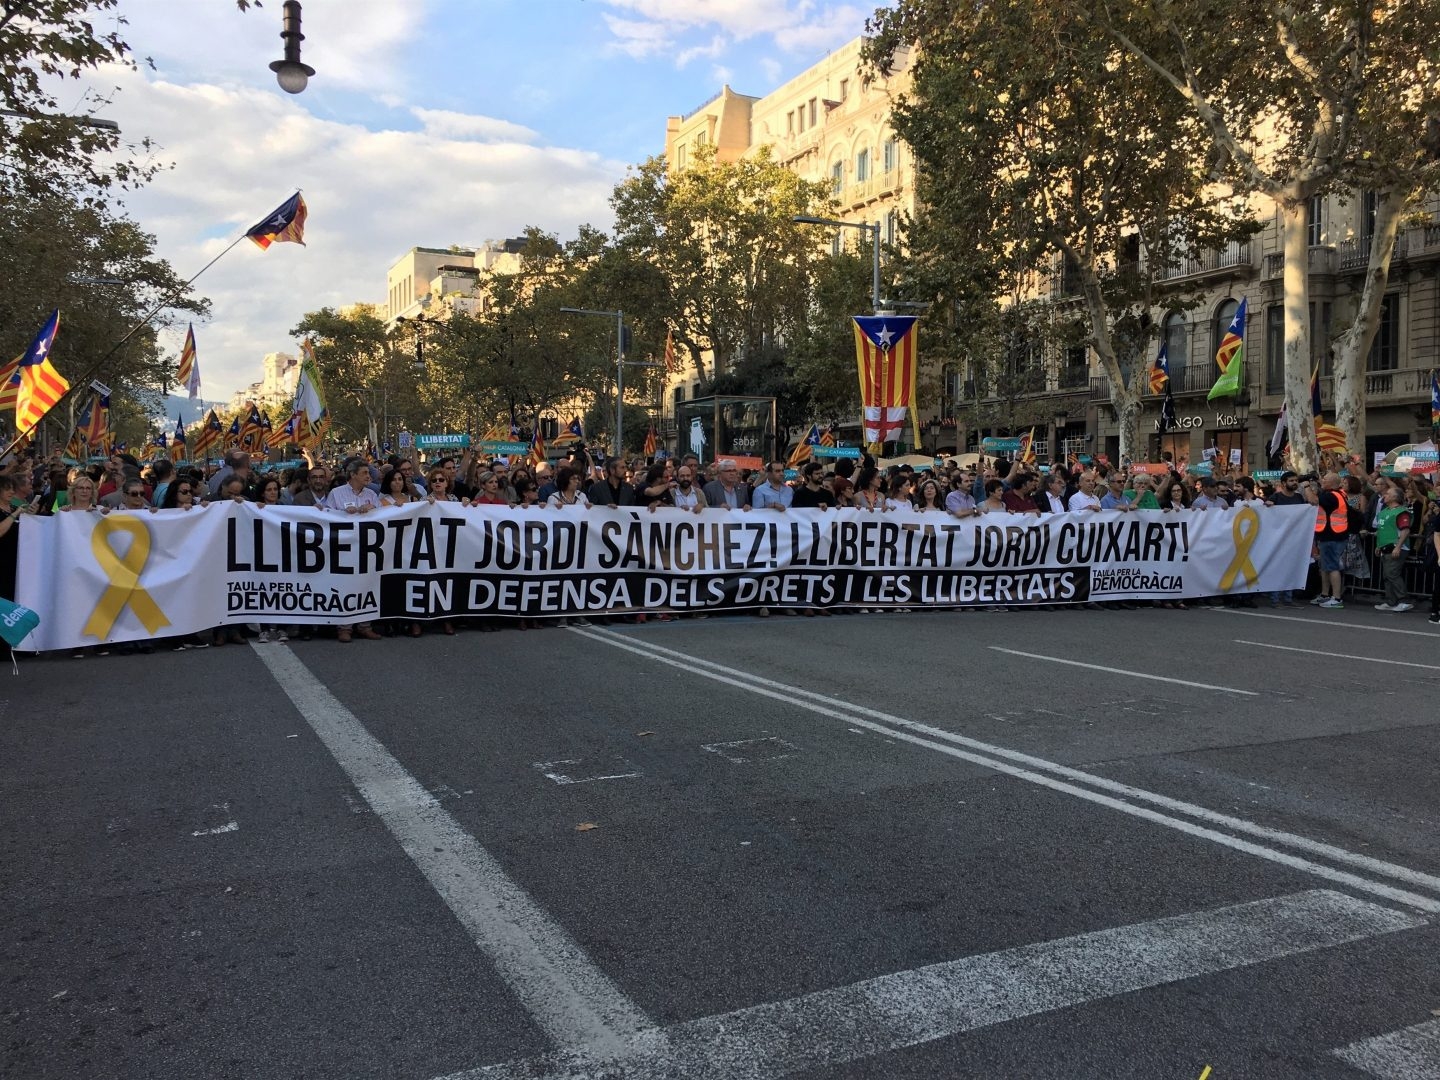 Cabecera de la manifestación por la libertad y el autogobierno en Cataluña, celebrada en Barcelona, tras el acuerdo del Consejo de Ministros para activar el artículo 155.